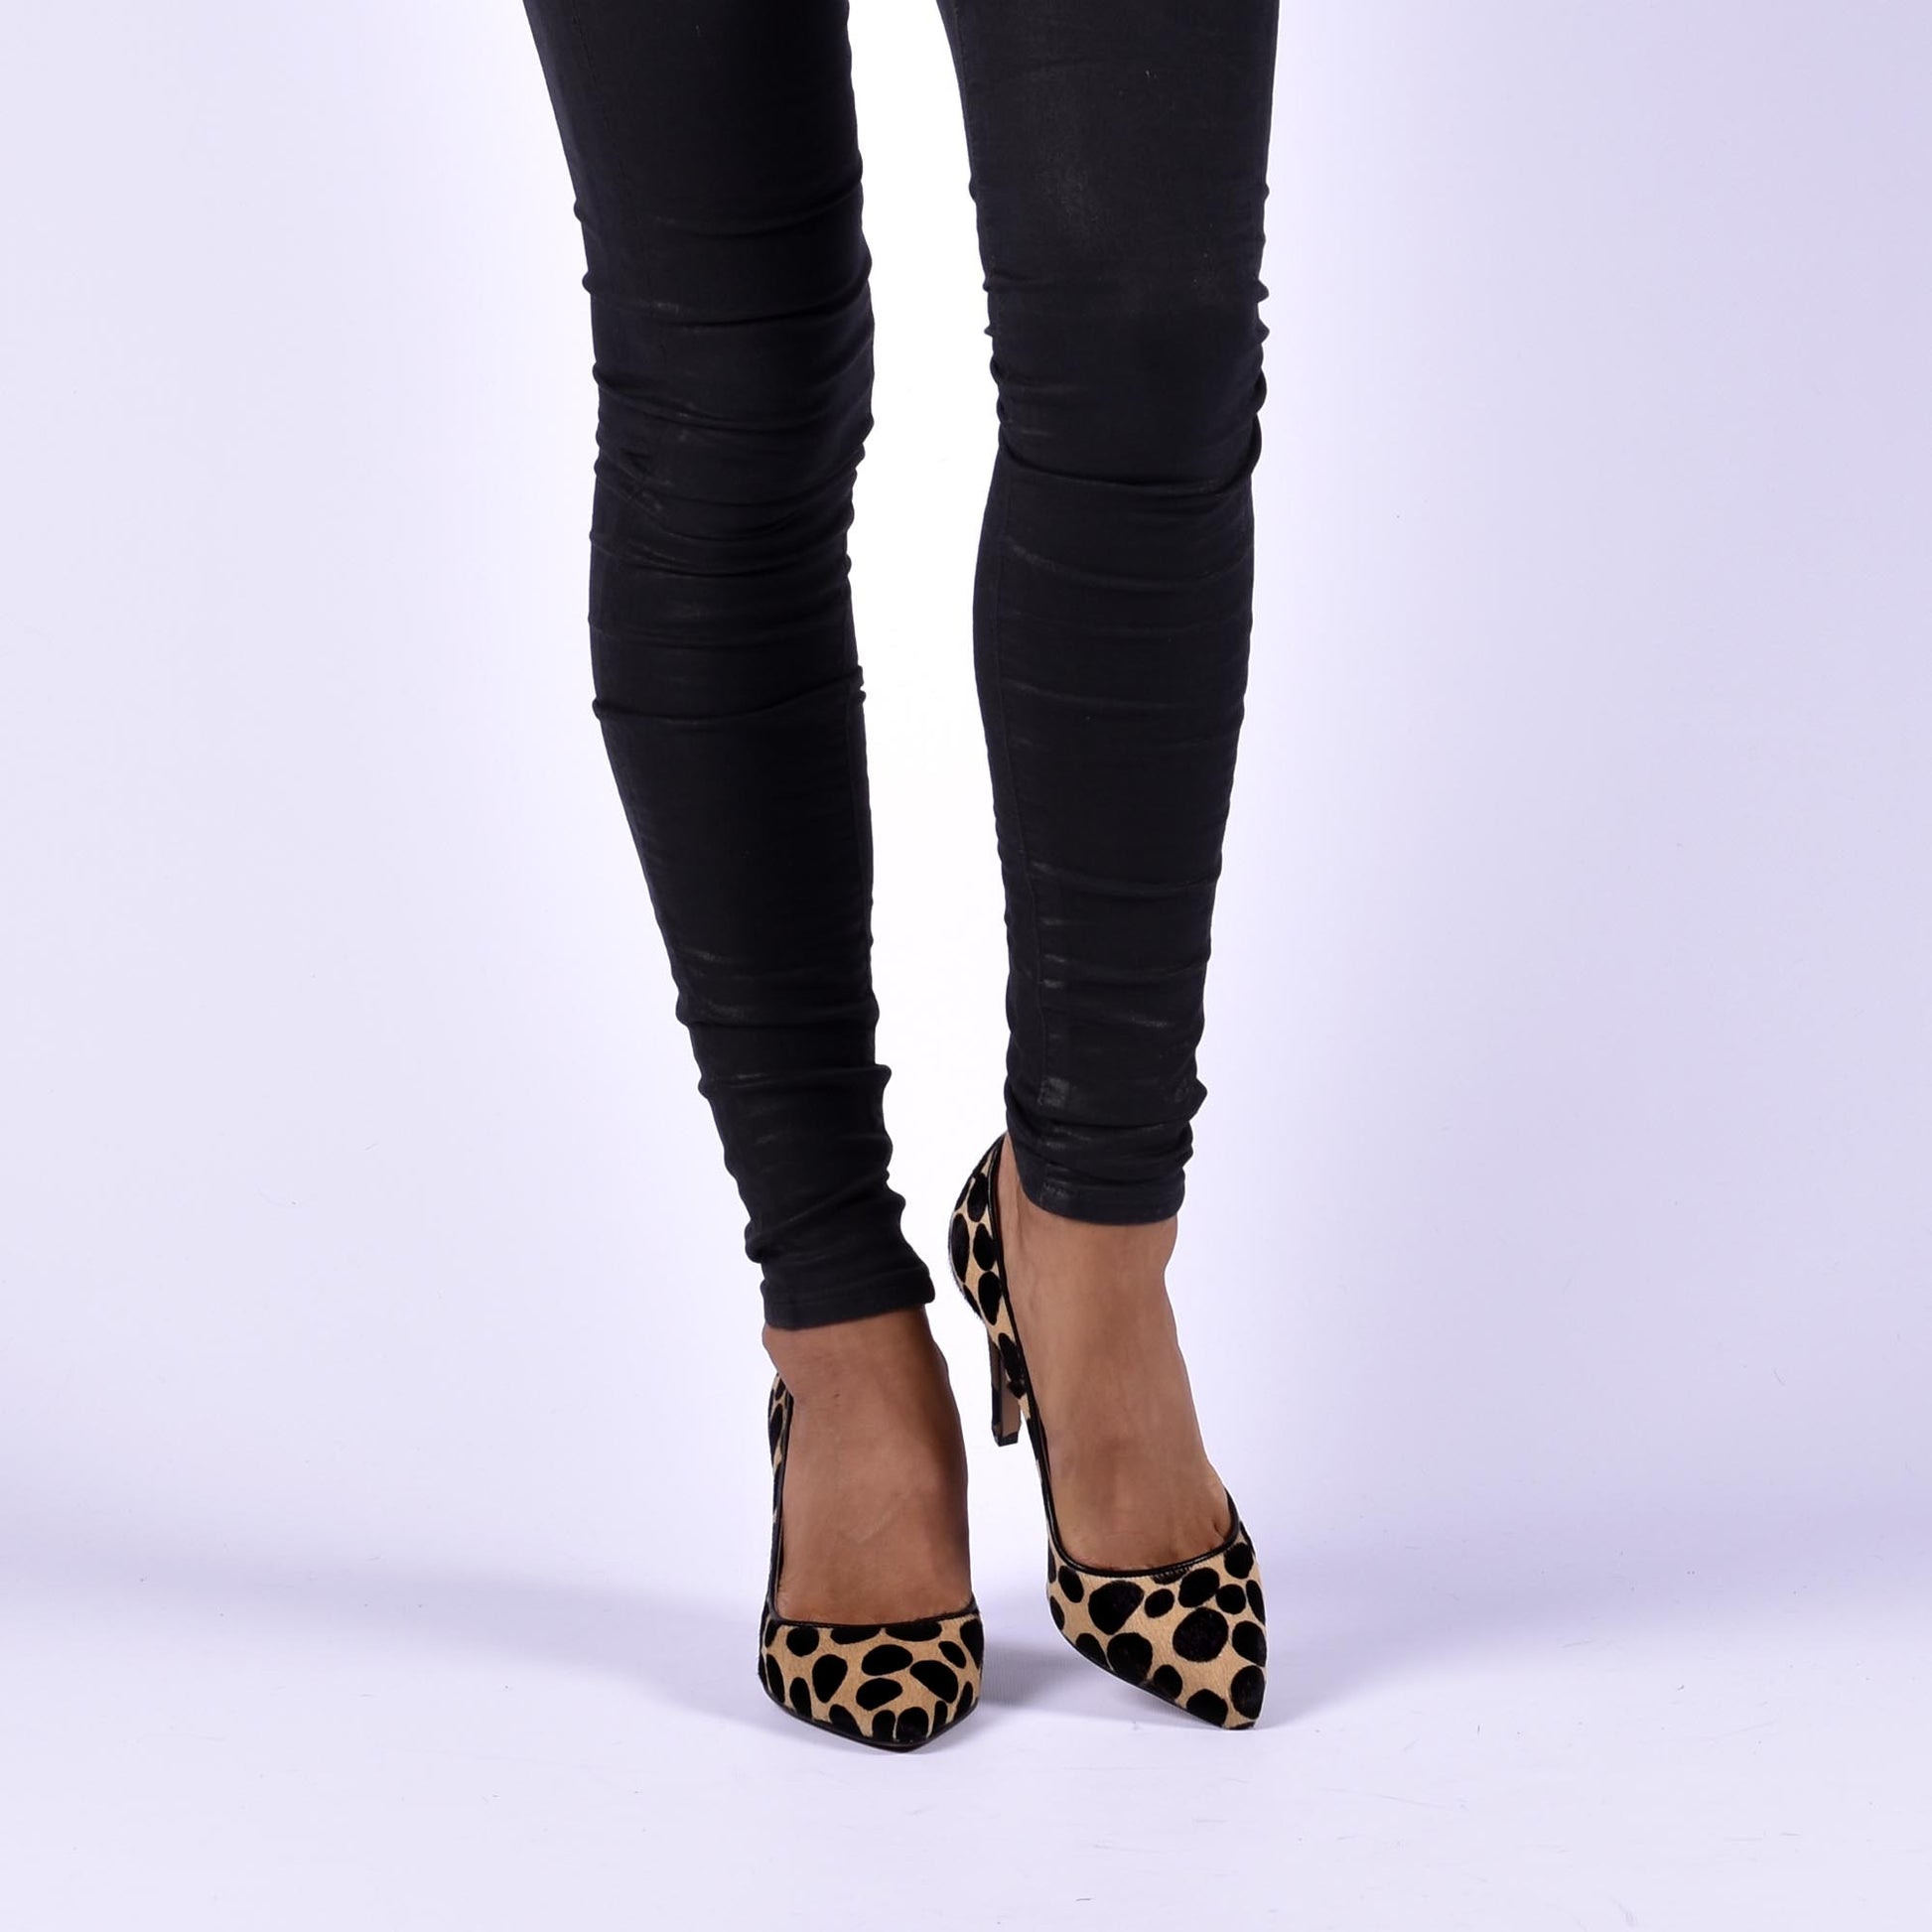 zapatos mujer tacon alto leopardo